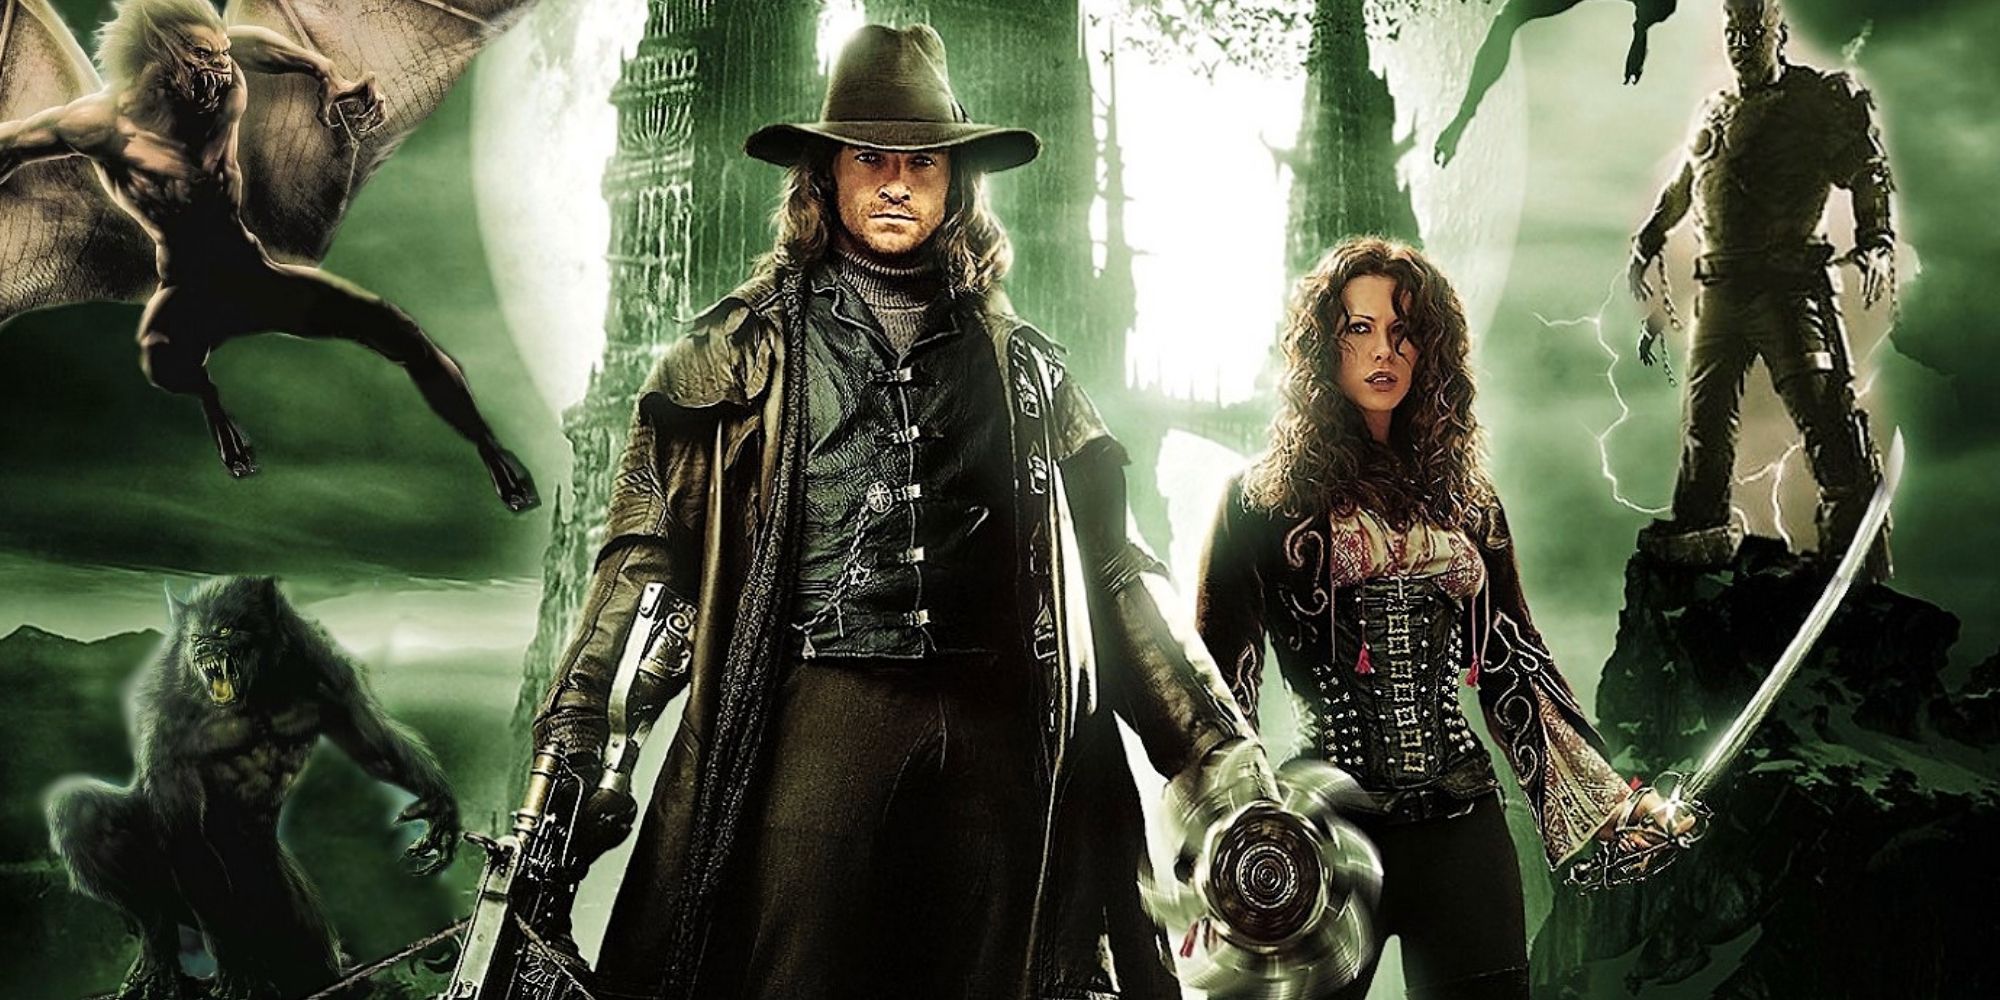 How to Make A Compelling Van Helsing Reboot